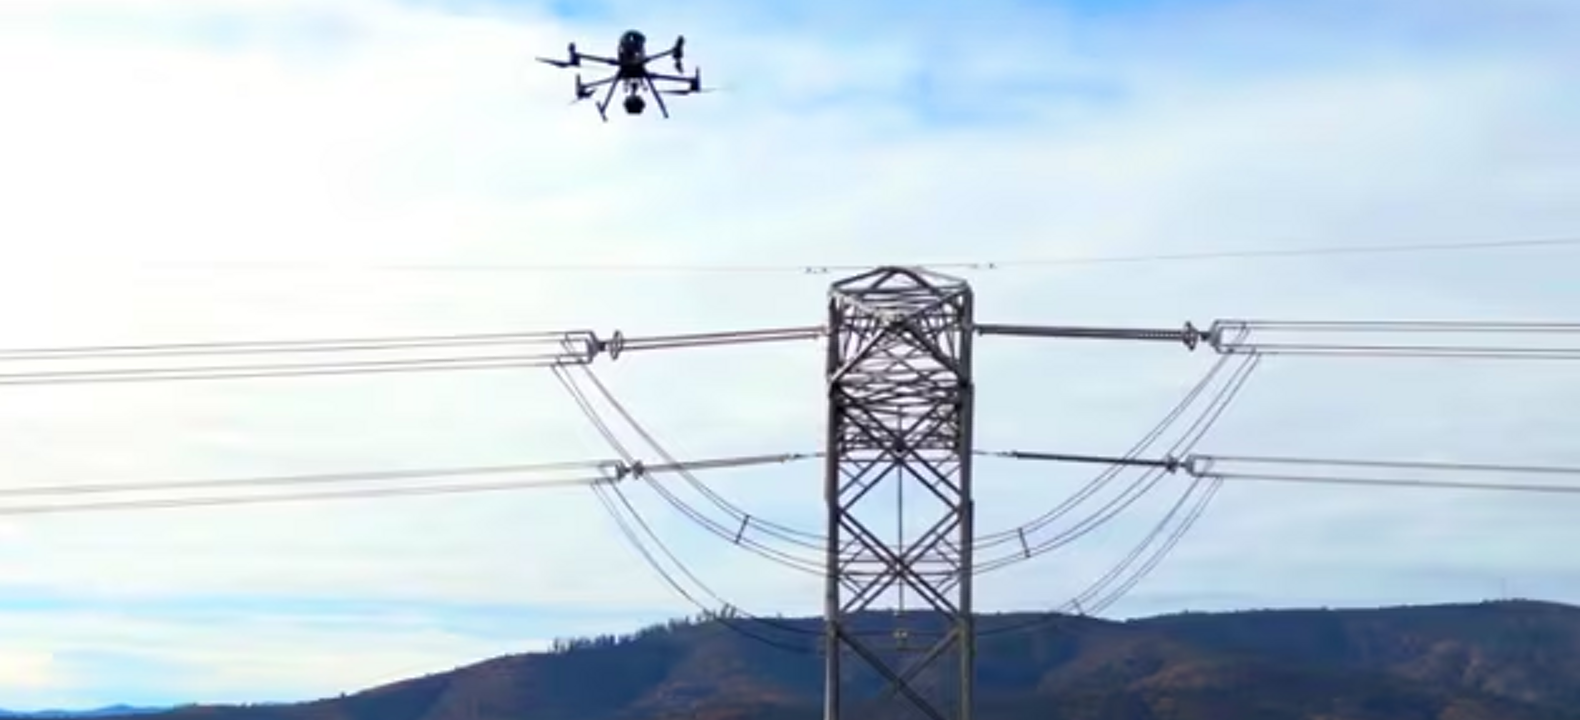 Un dron conectado sobrevuela un apoyo de línea eléctrica usando visión por computadora para ayudar a inspeccionar la infraestructura.